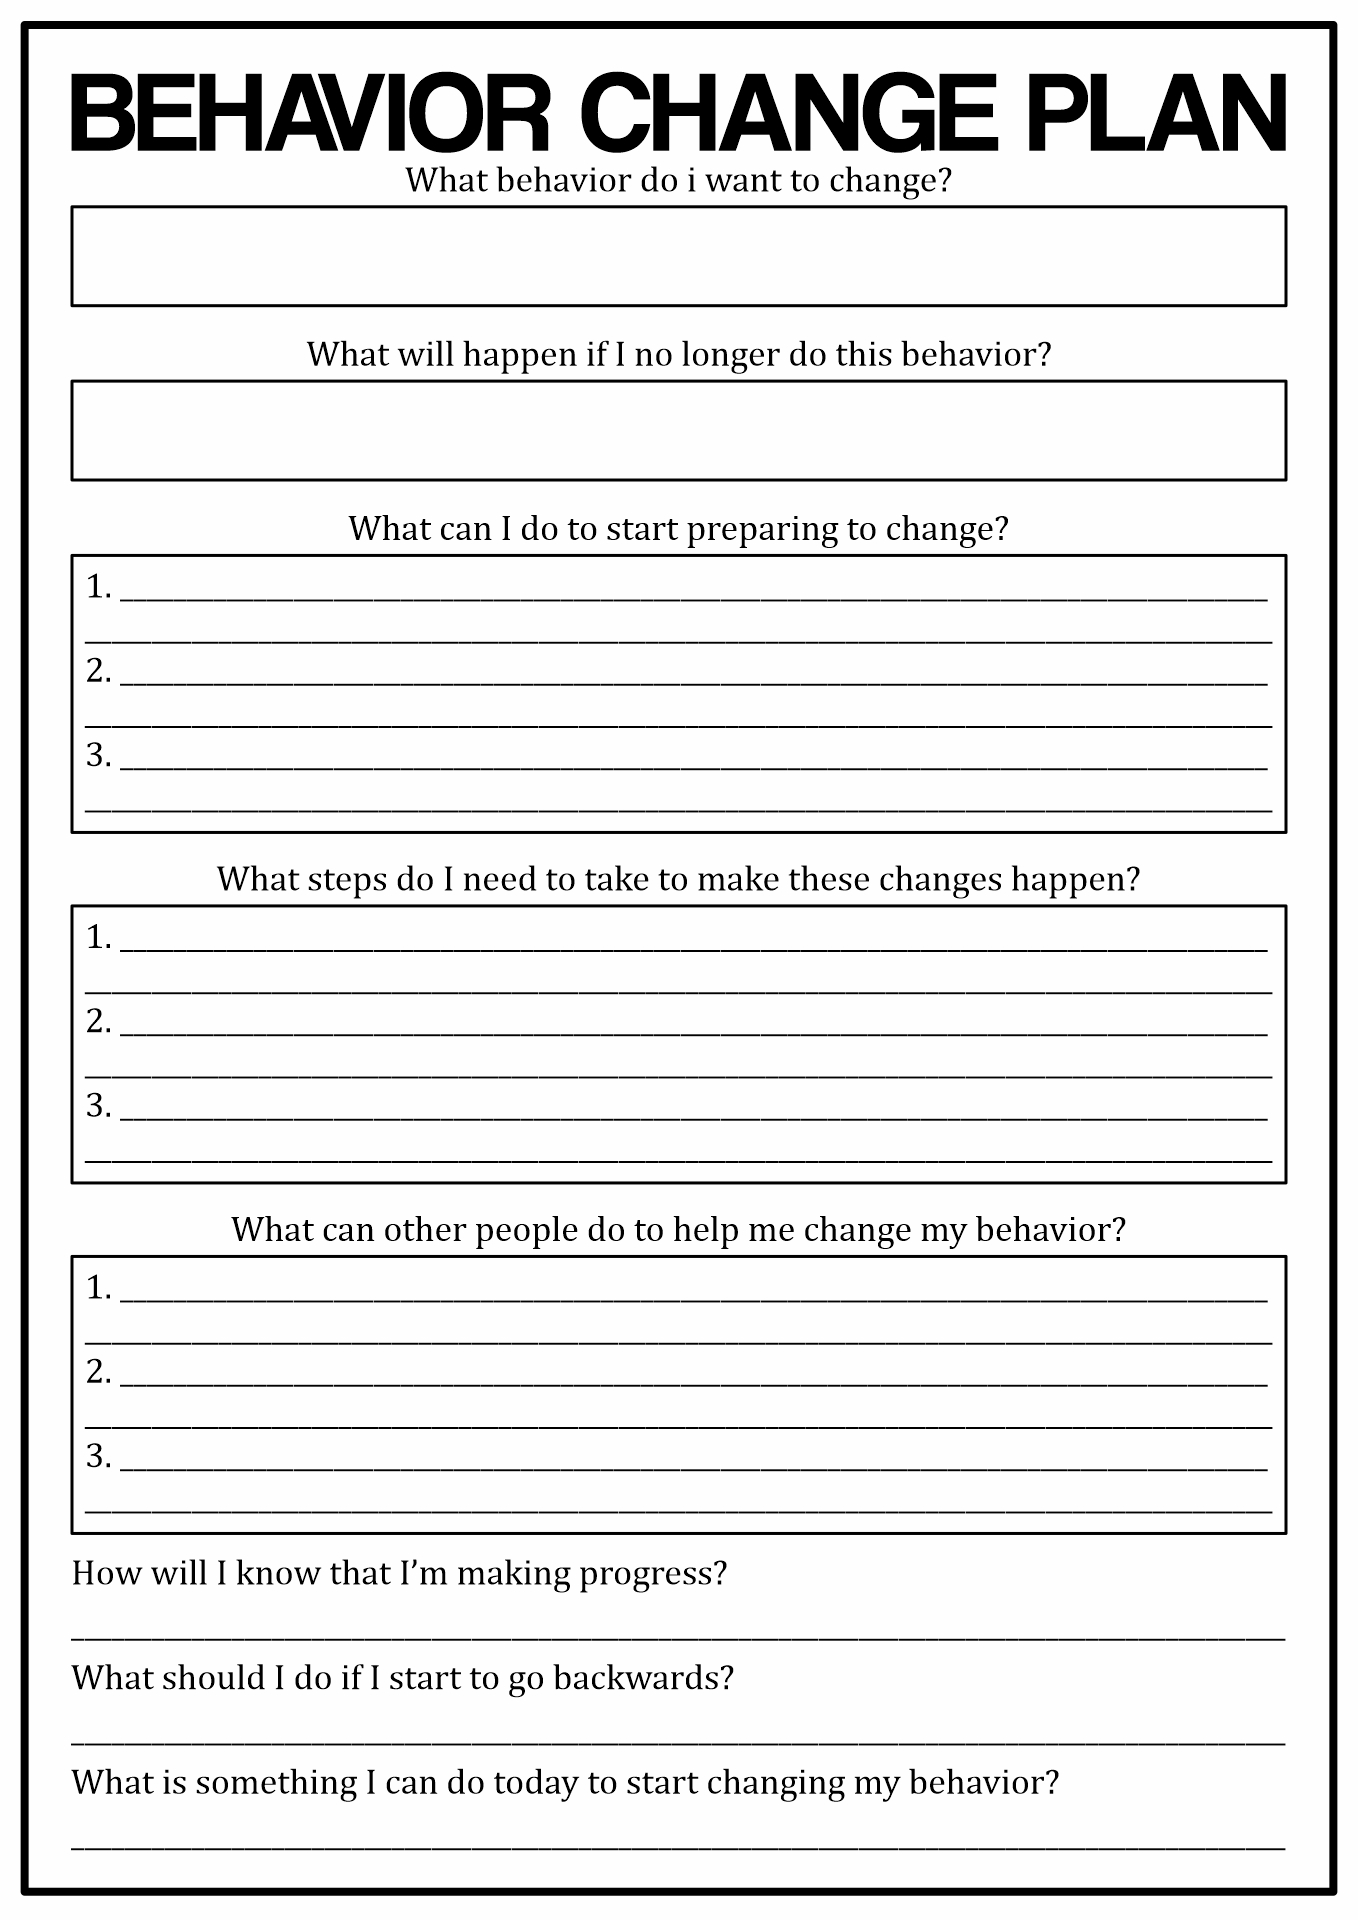 Behavior Change Plan Worksheet Image